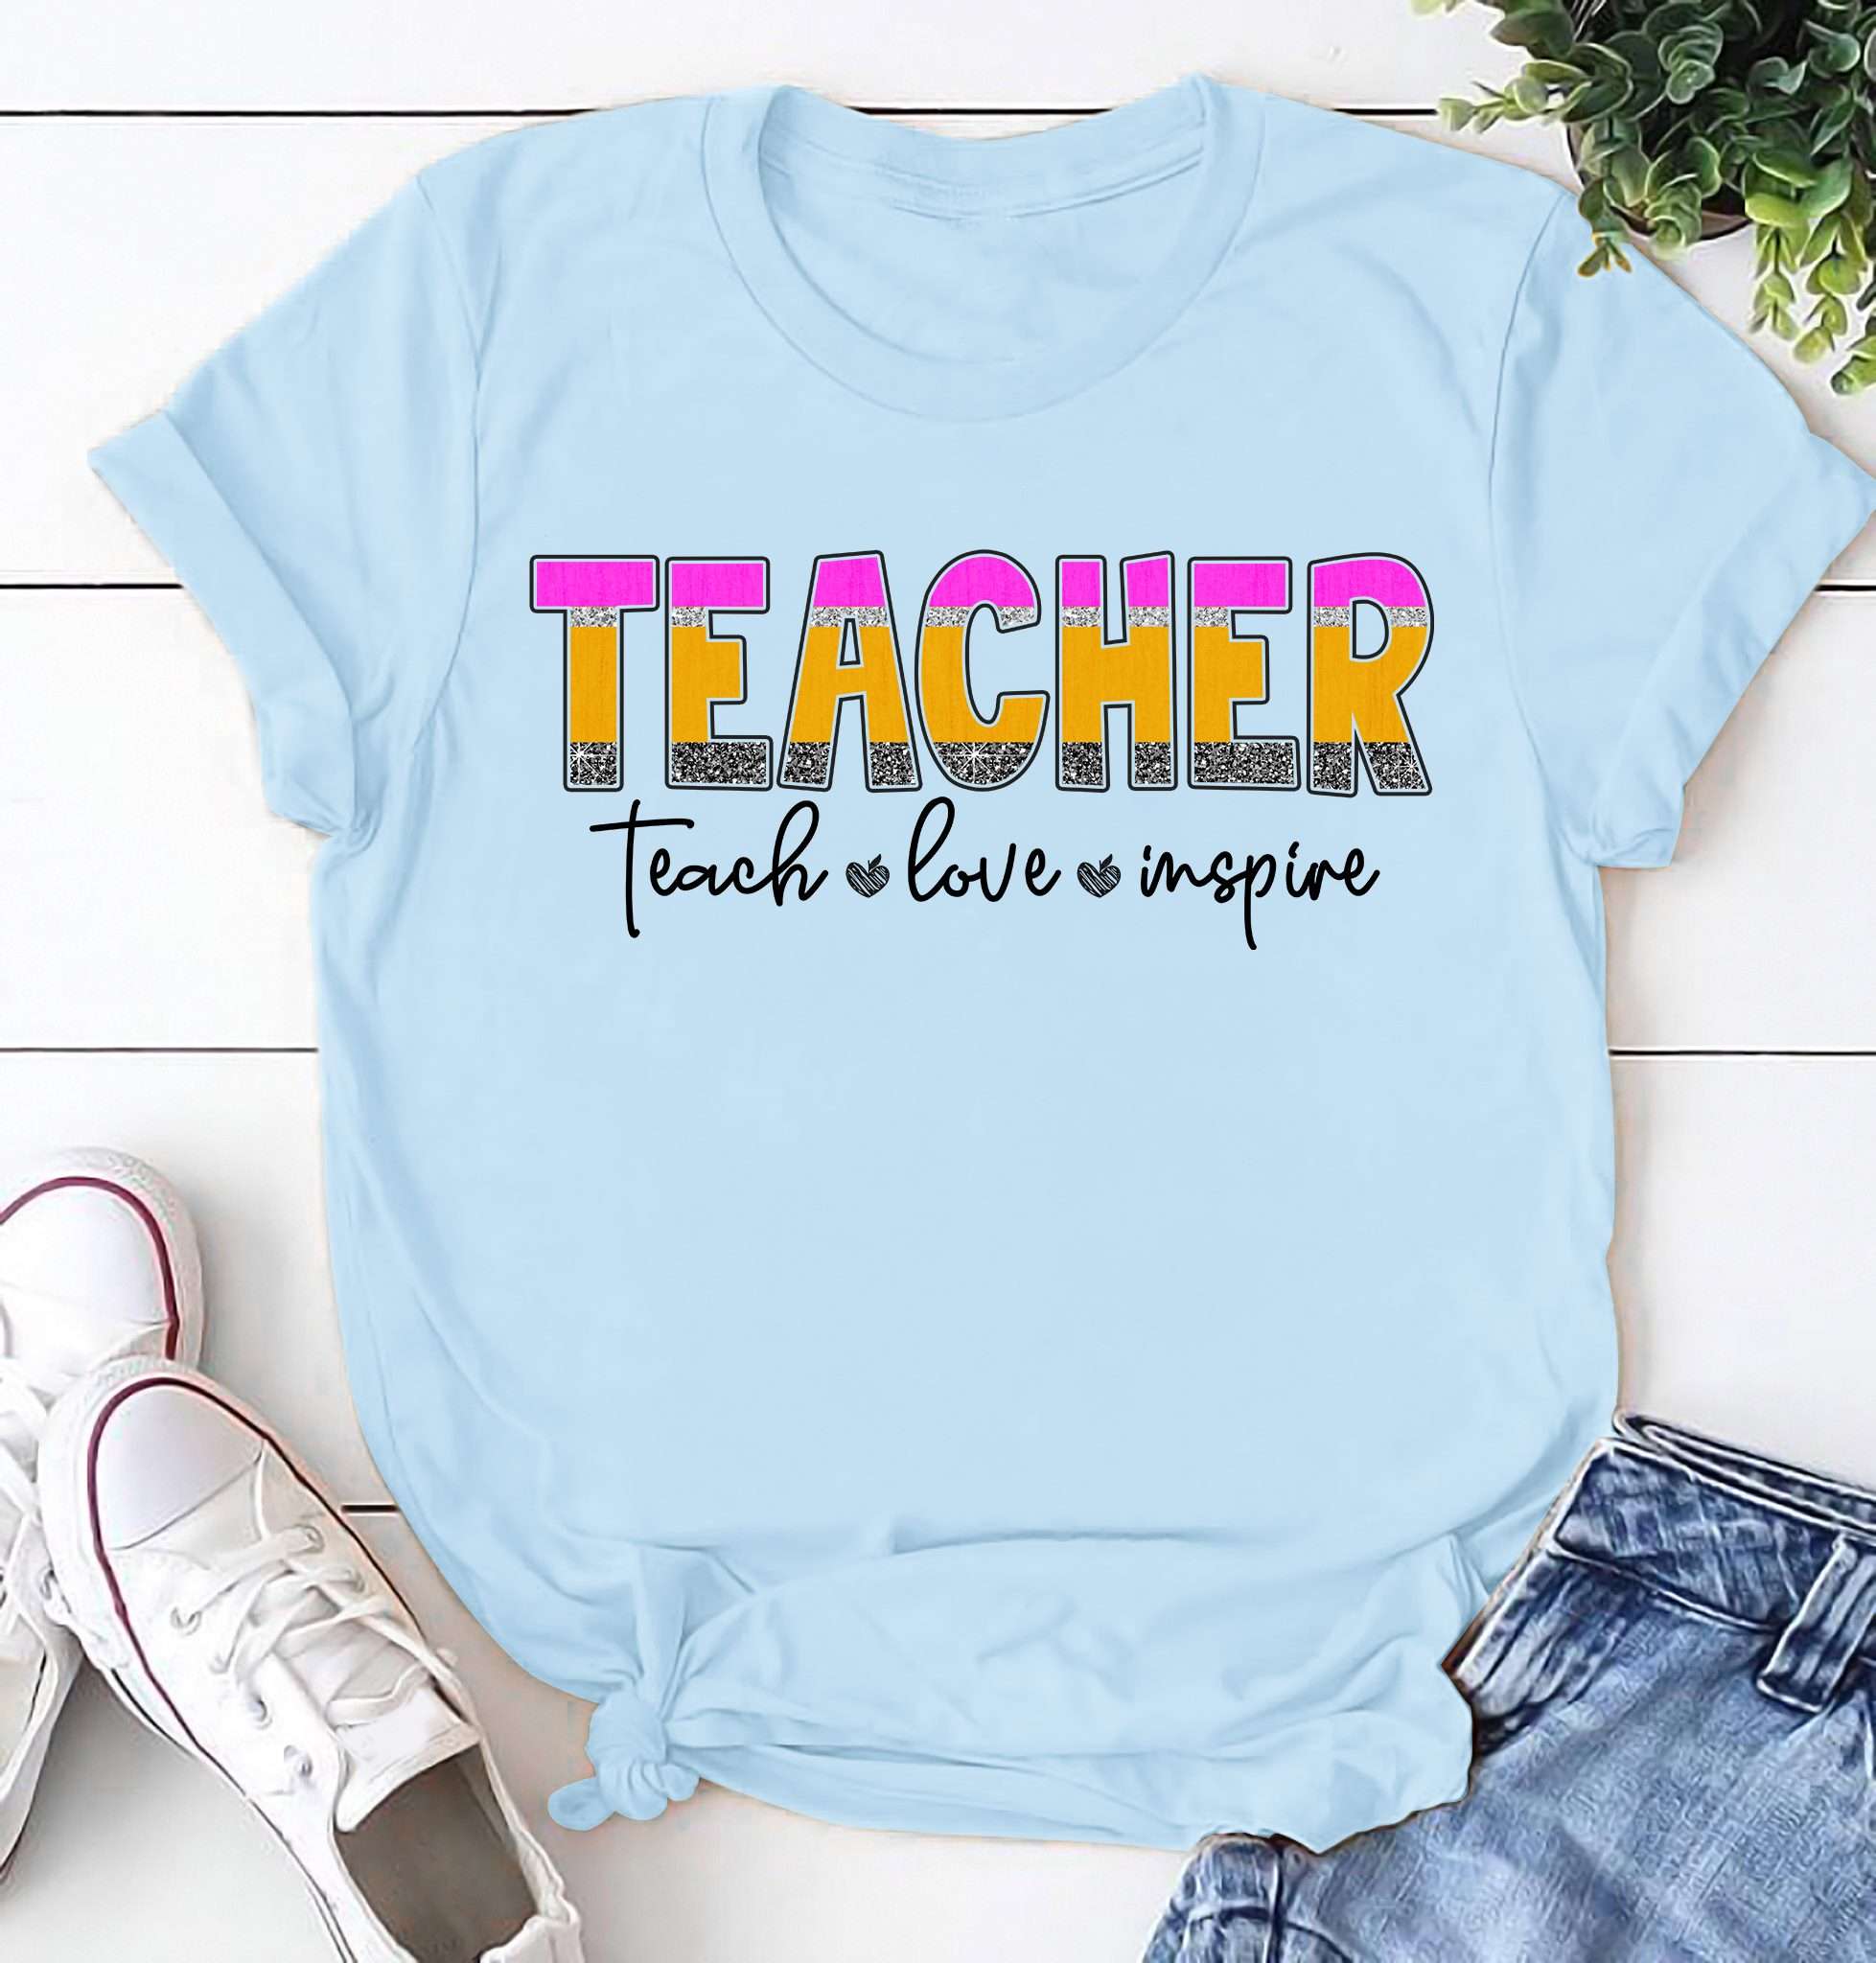 Teacher teach love inspire - Teaching the educational job, teacher life